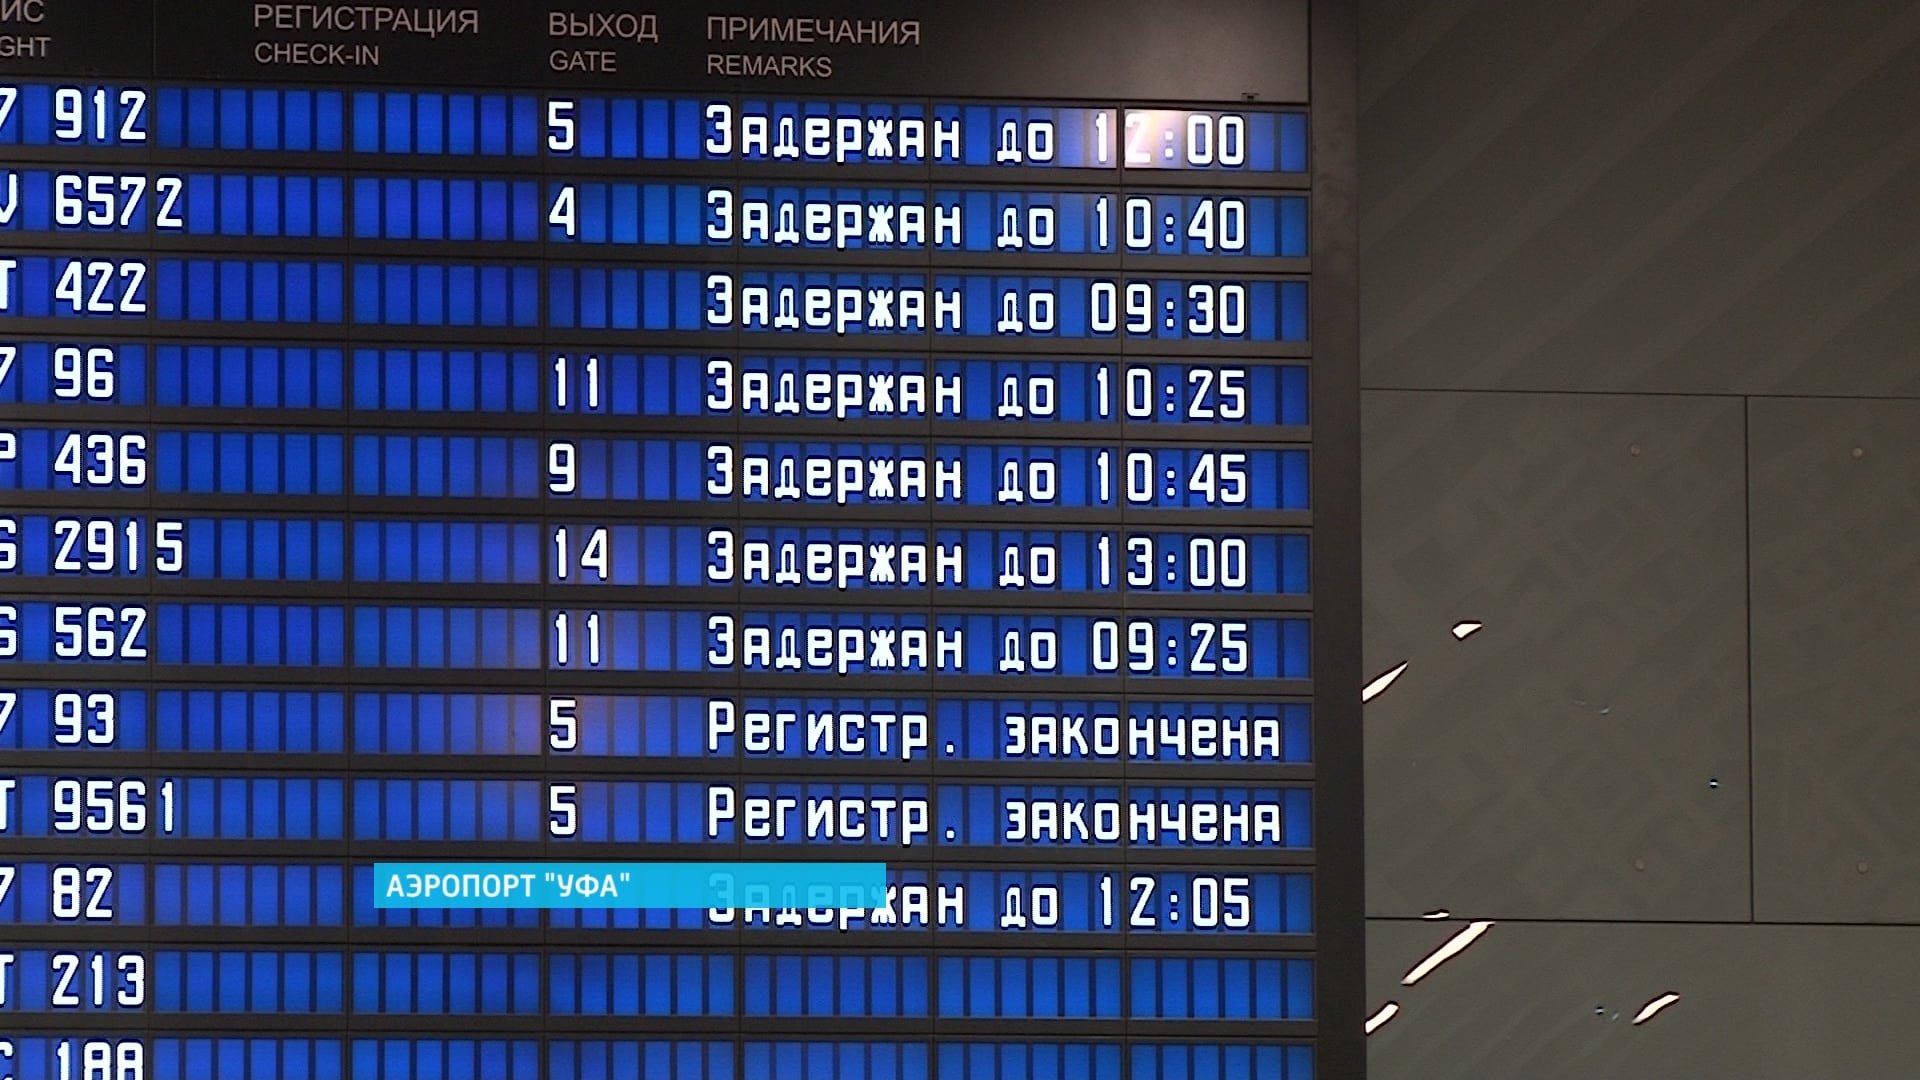 Аэропорт Уфа